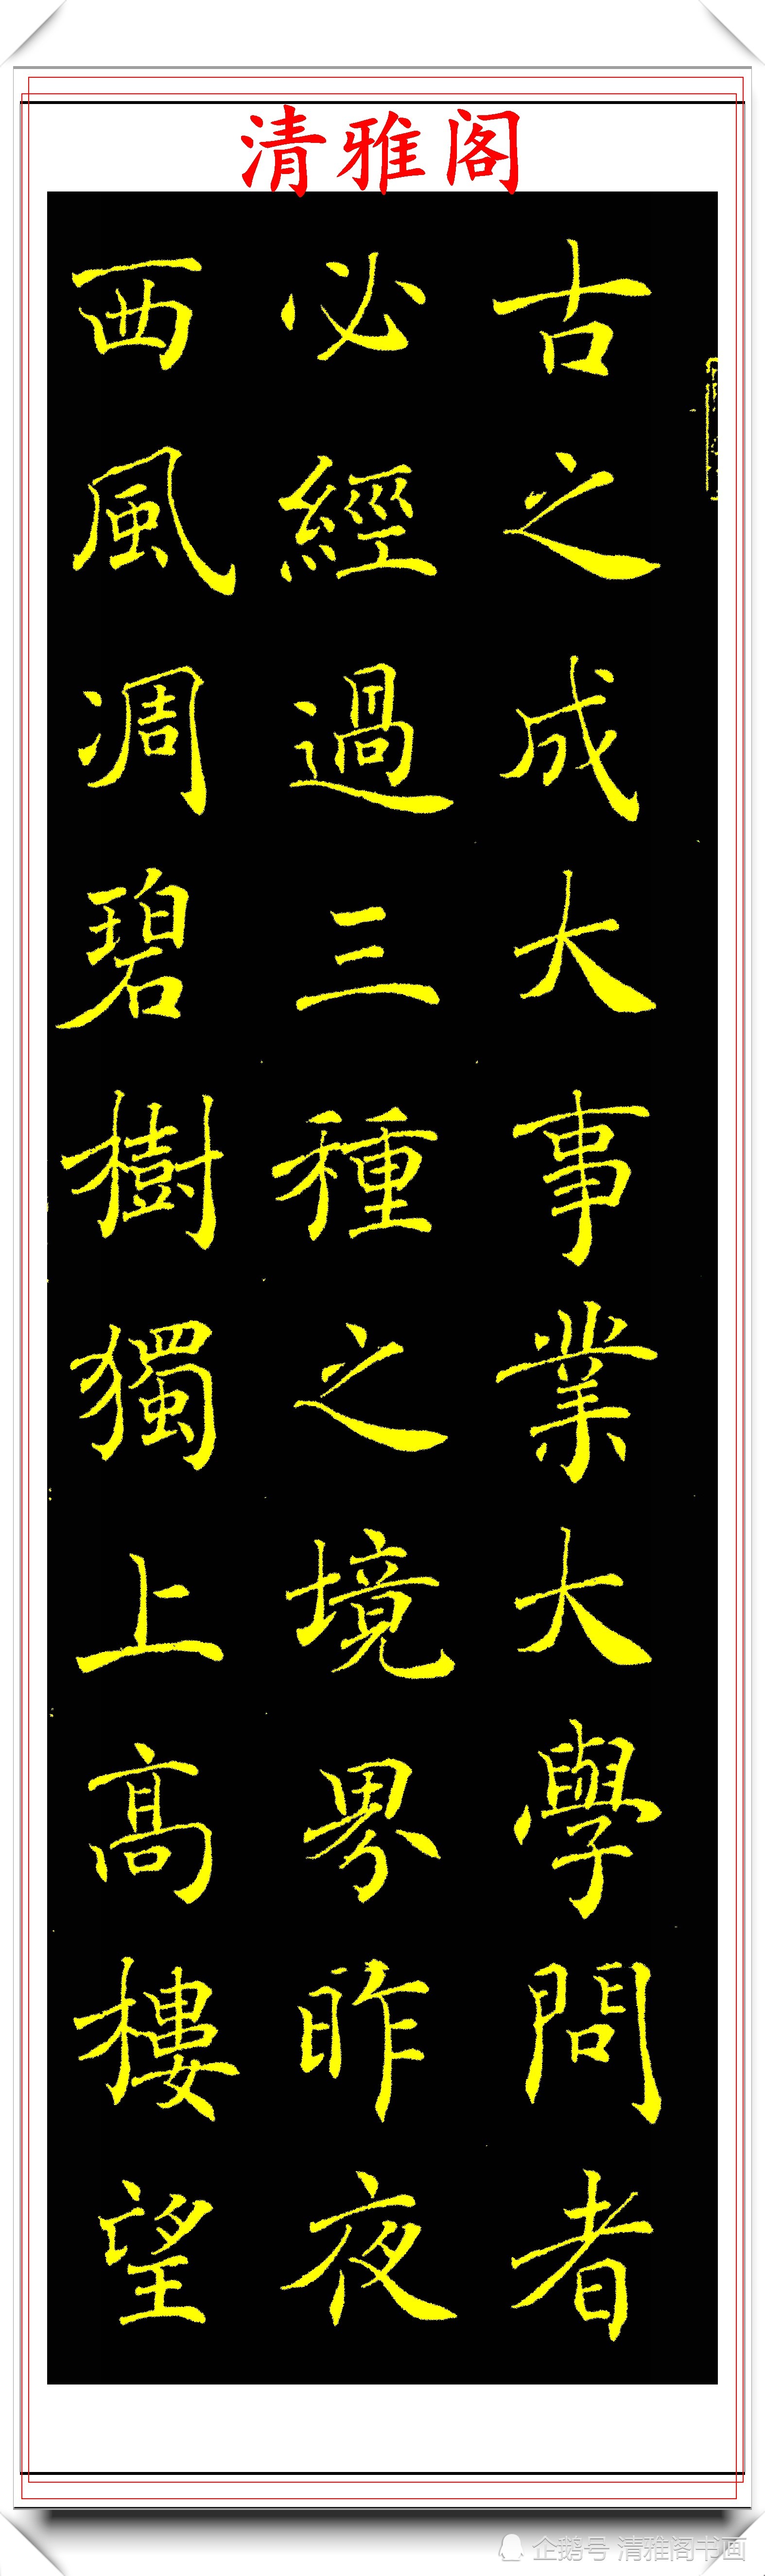 中书协著名书法家张宇,楷书《人间词话》欣赏,现代书法的登峰